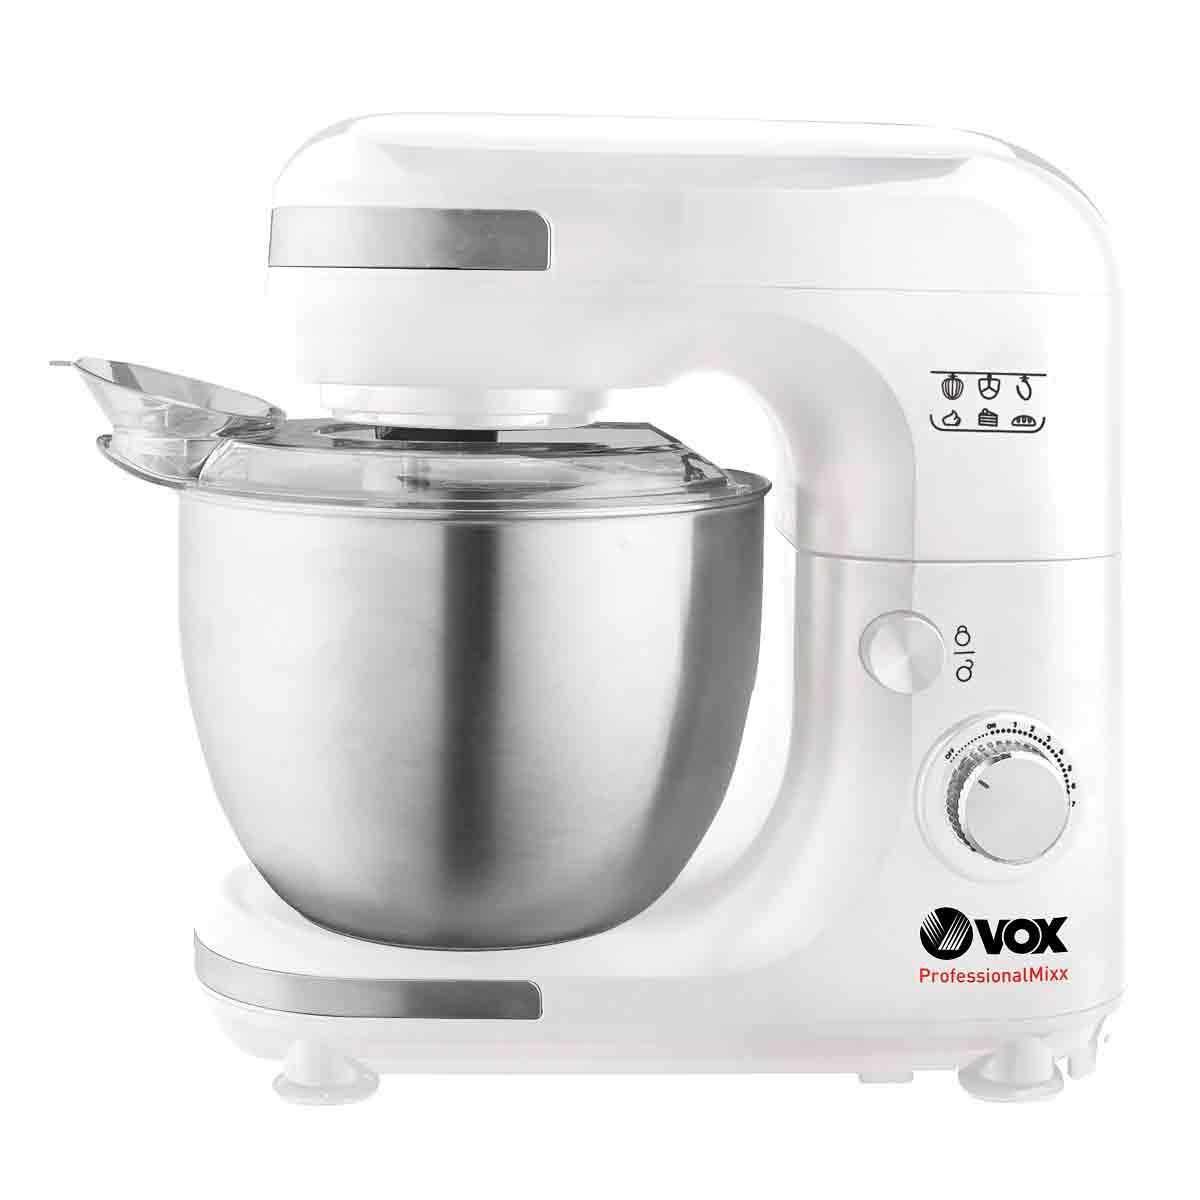 Selected image for VOX Mikser kuhinjski robot KR 9702